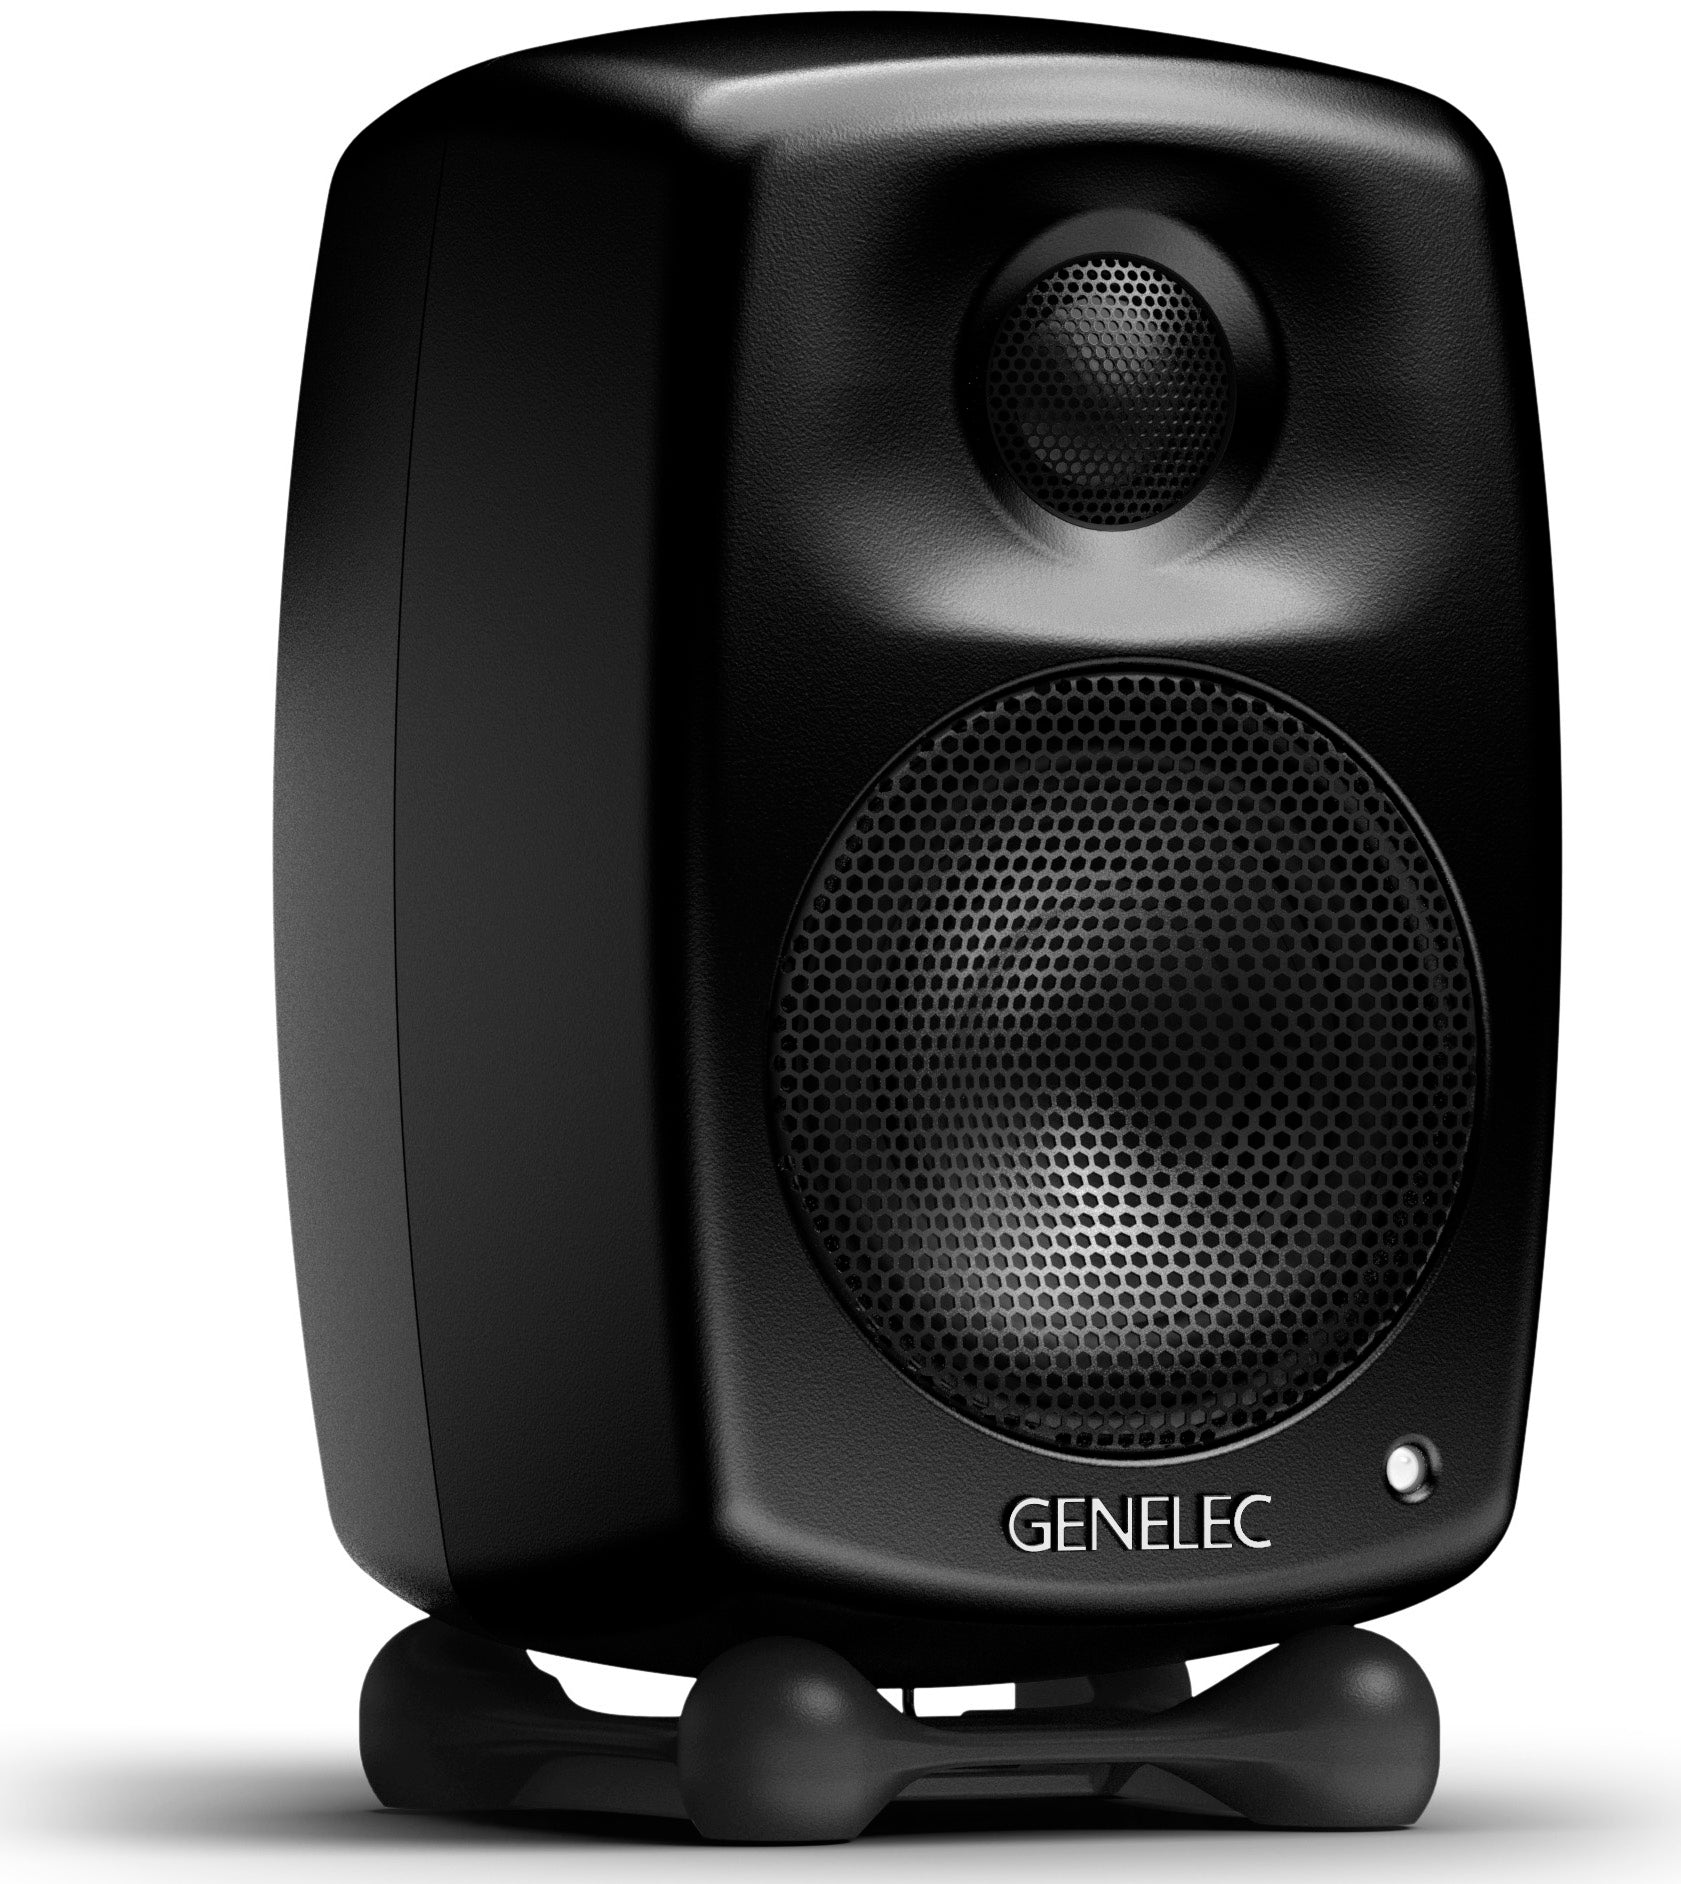 Genelec G One active speaker